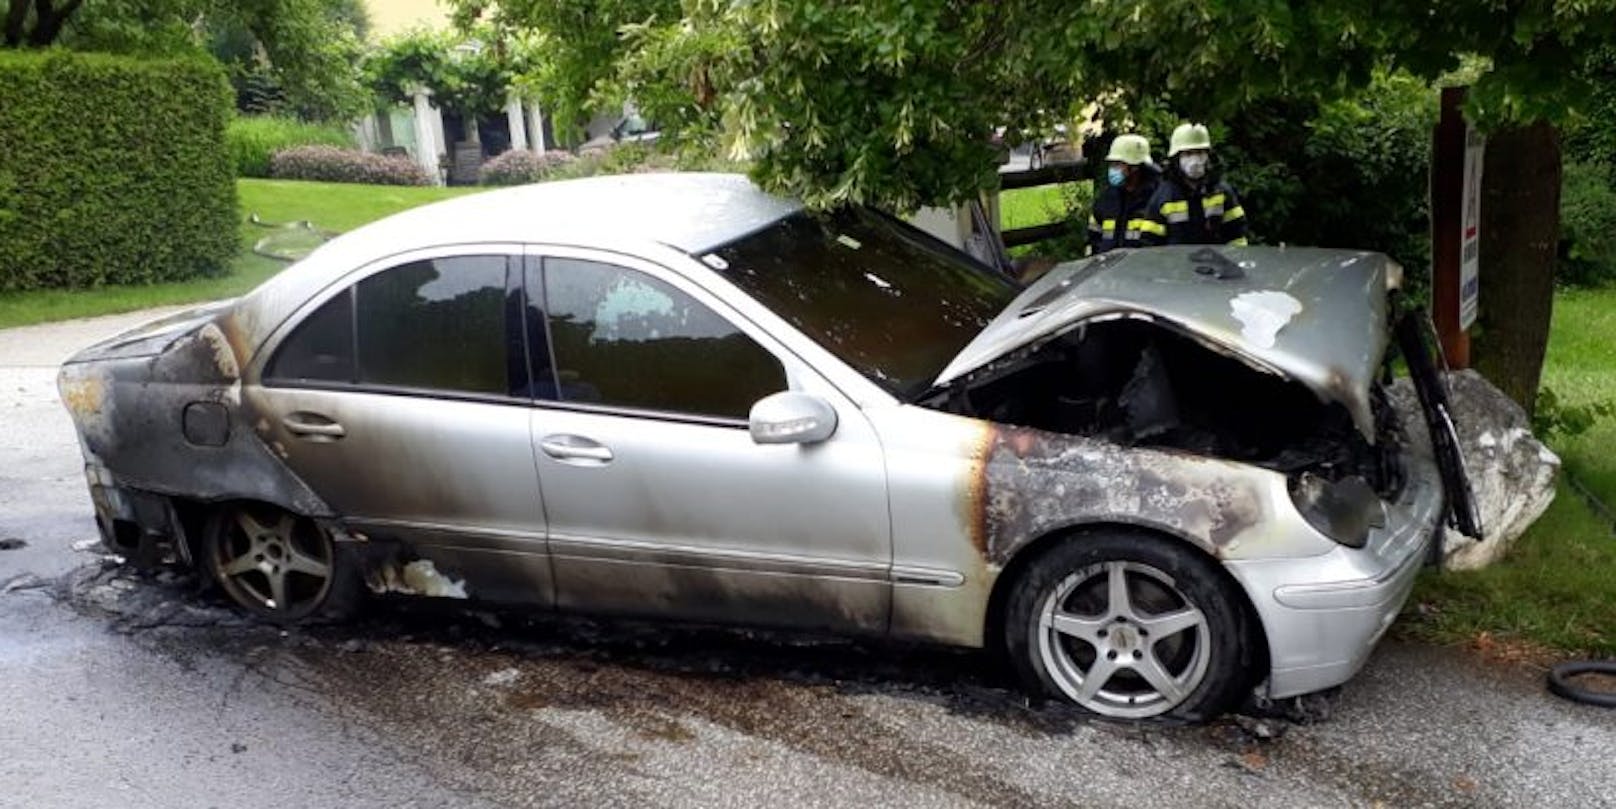 Wahrscheinlich aufgrund eines technischen Defektes im Motorbereich fing der Mercedes Feuer.